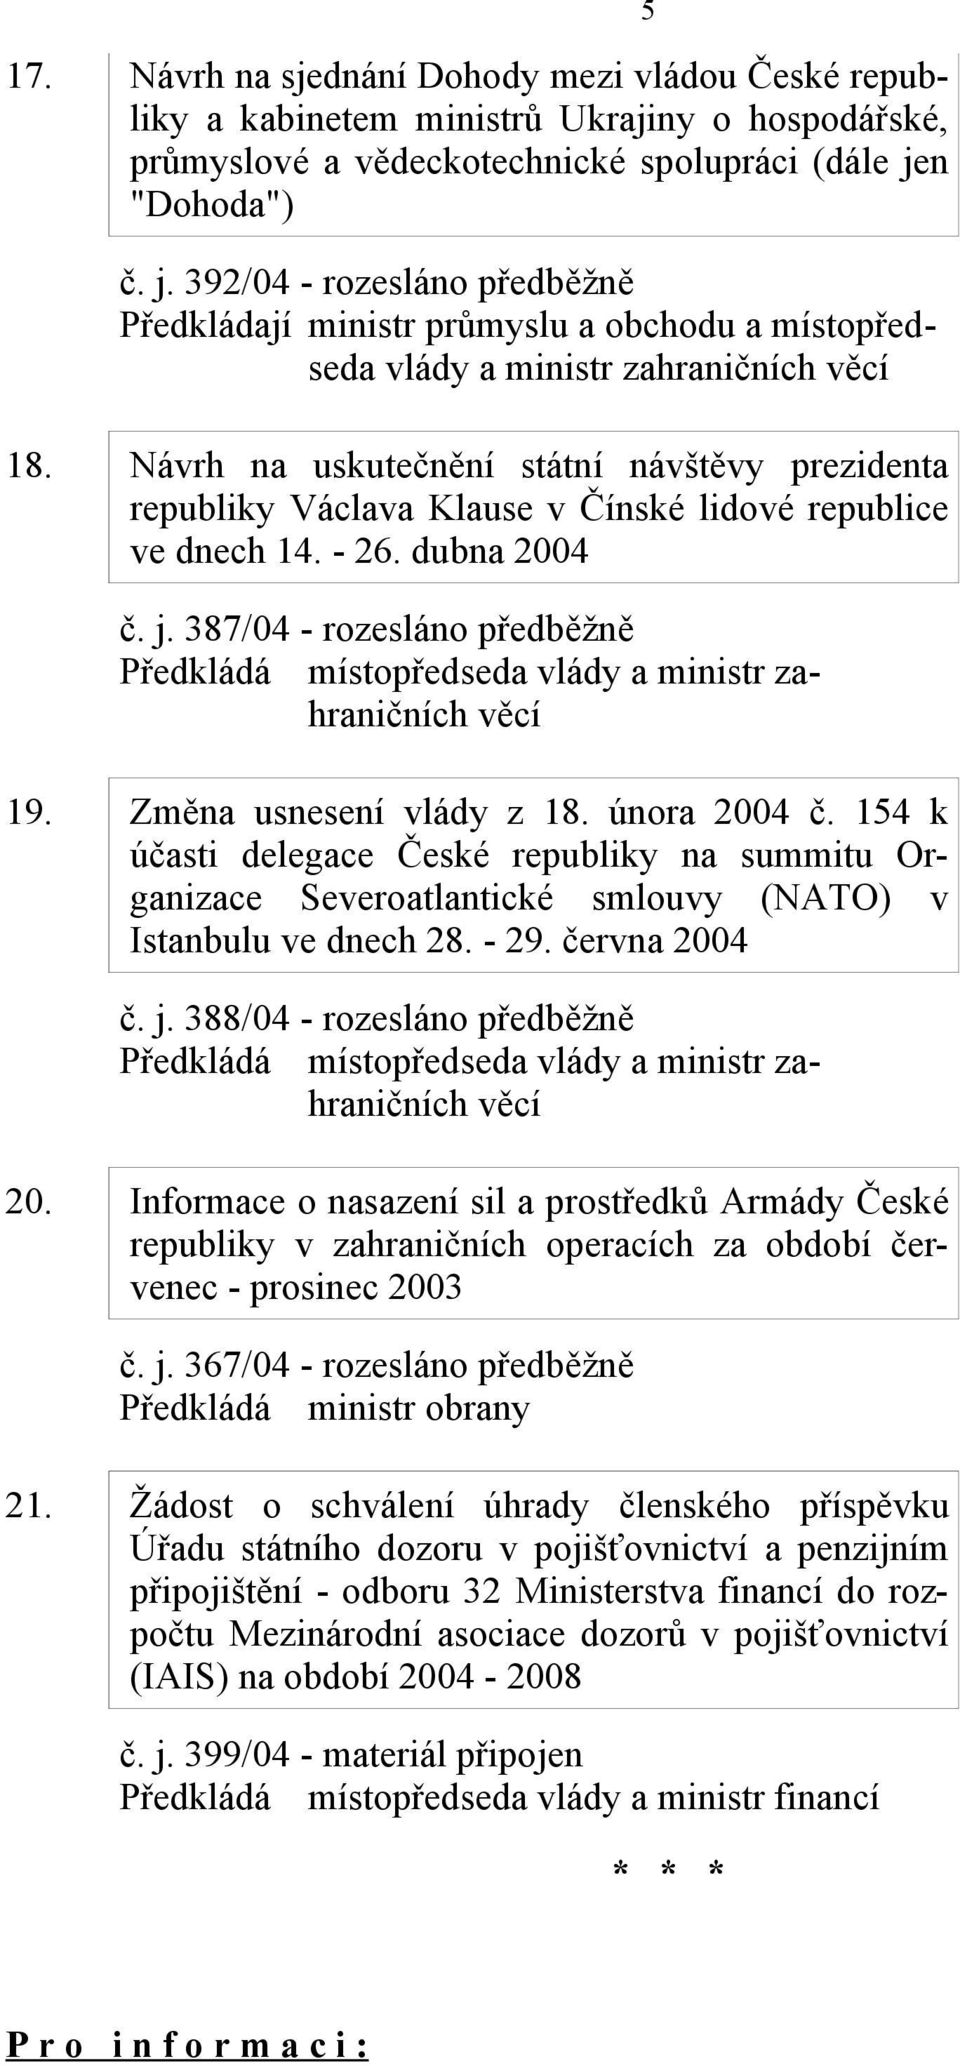 Návrh na uskutečnění státní návštěvy prezidenta republiky Václava Klause v Čínské lidové republice ve dnech 14. - 26. dubna 2004 č. j. 387/04 - rozesláno předběžně 19. Změna usnesení vlády z 18.